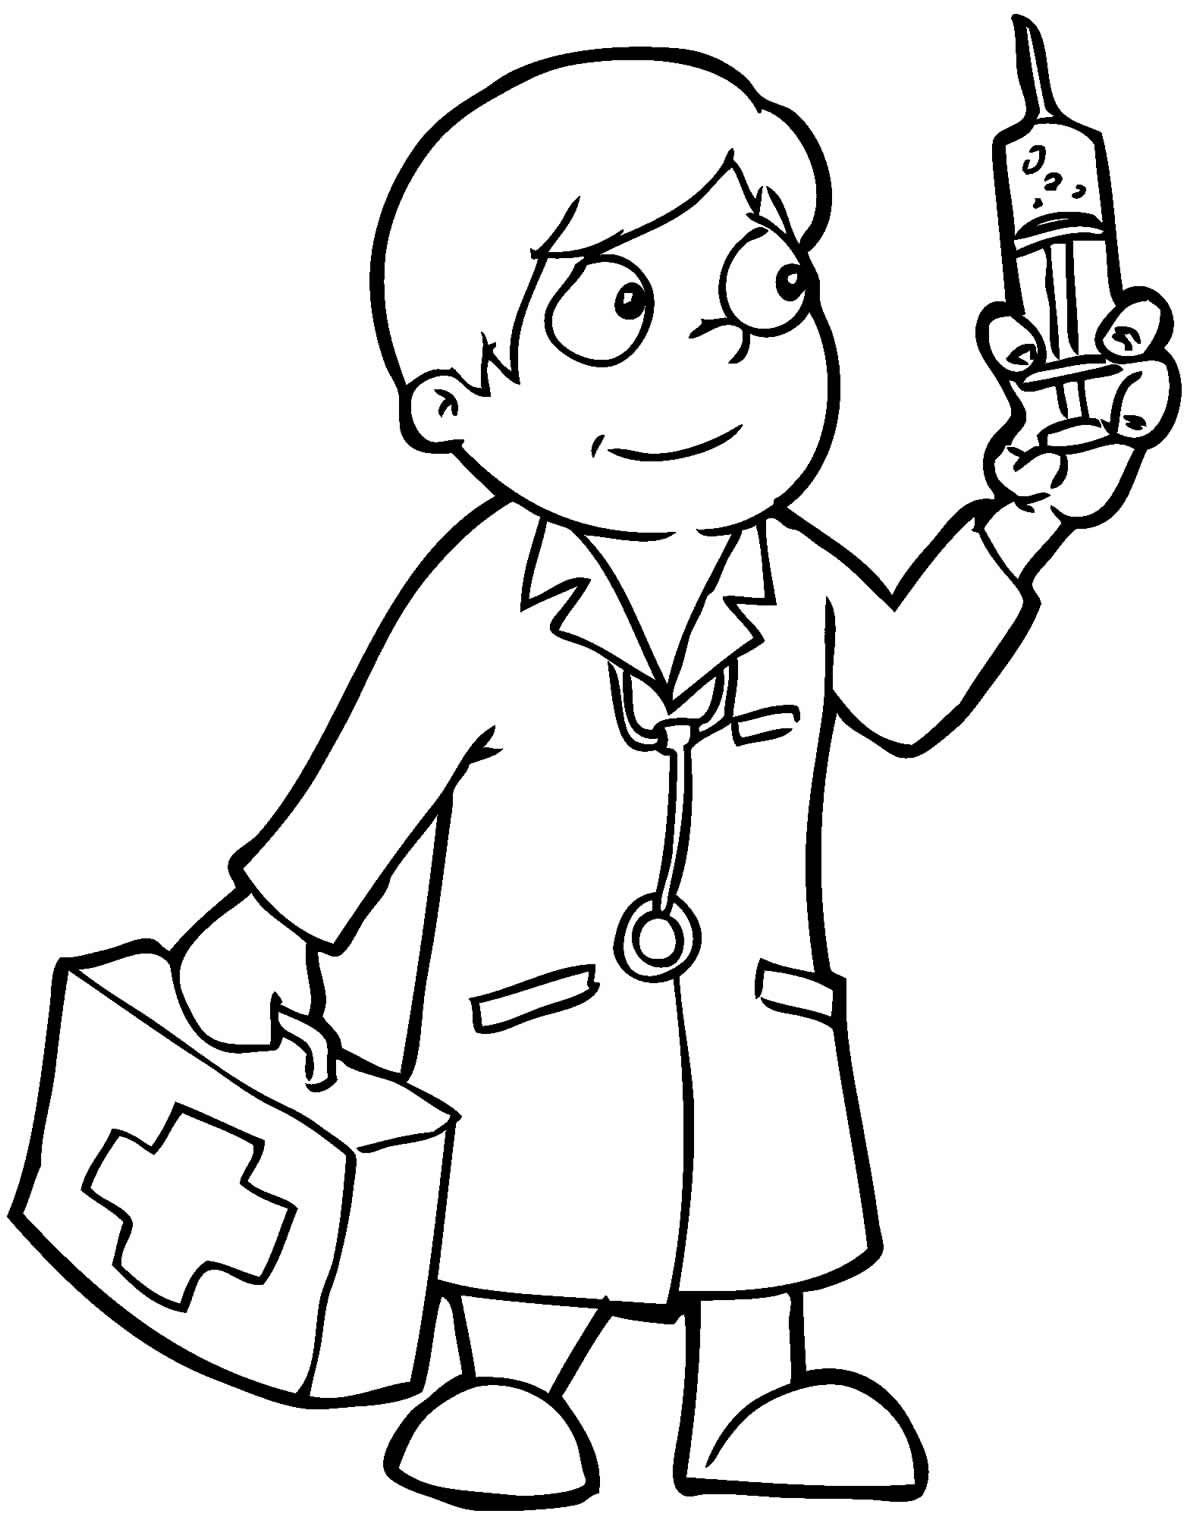 Como desenhar um médico #desenhosfaceislupedroso #medico 